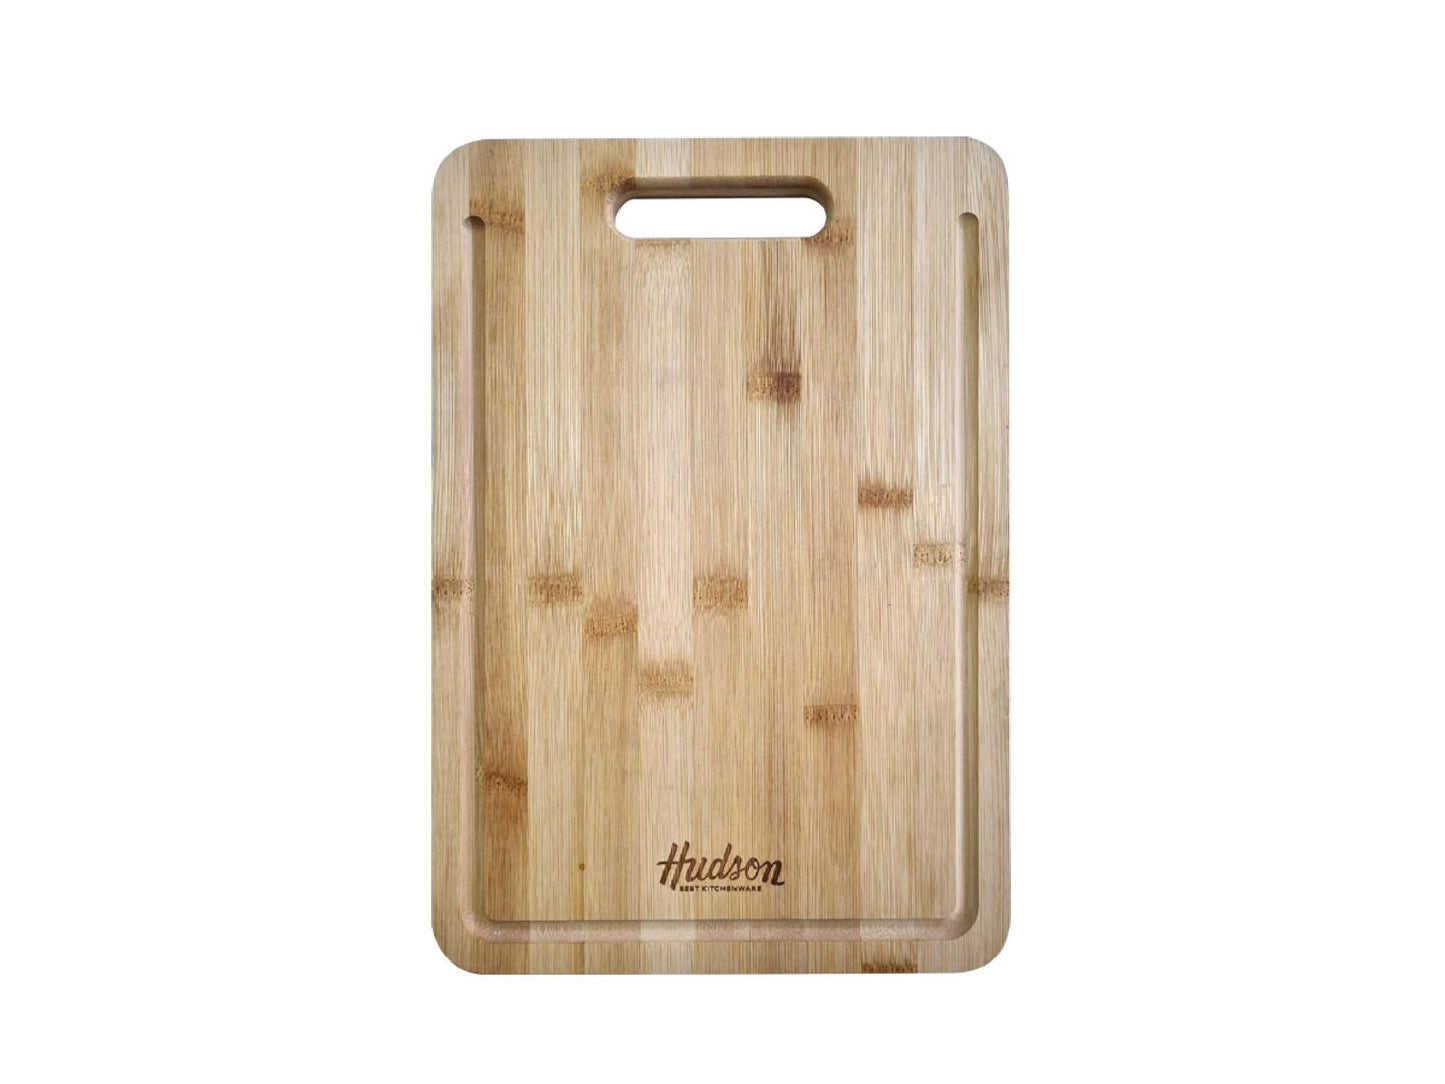 HUDSON Bamboo Cutting Board for Kitchen 13x9 inch